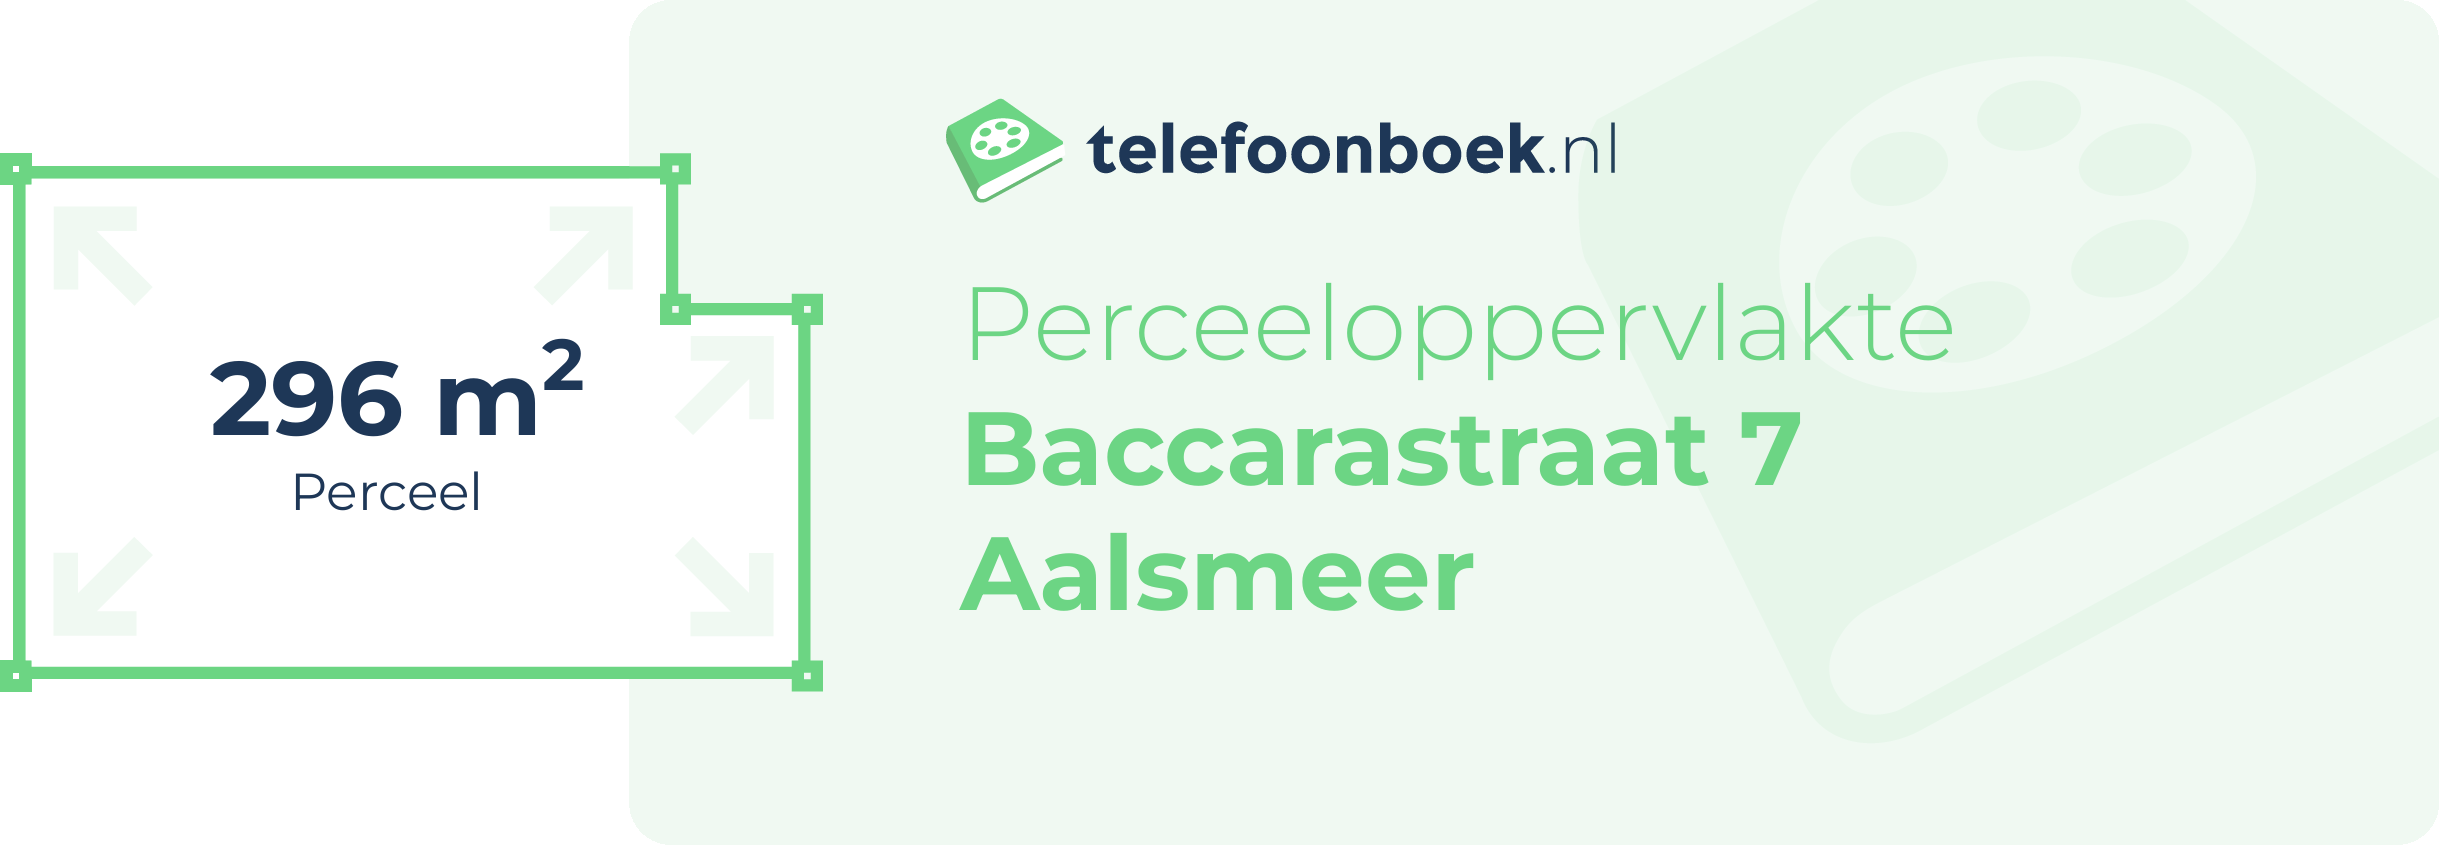 Perceeloppervlakte Baccarastraat 7 Aalsmeer